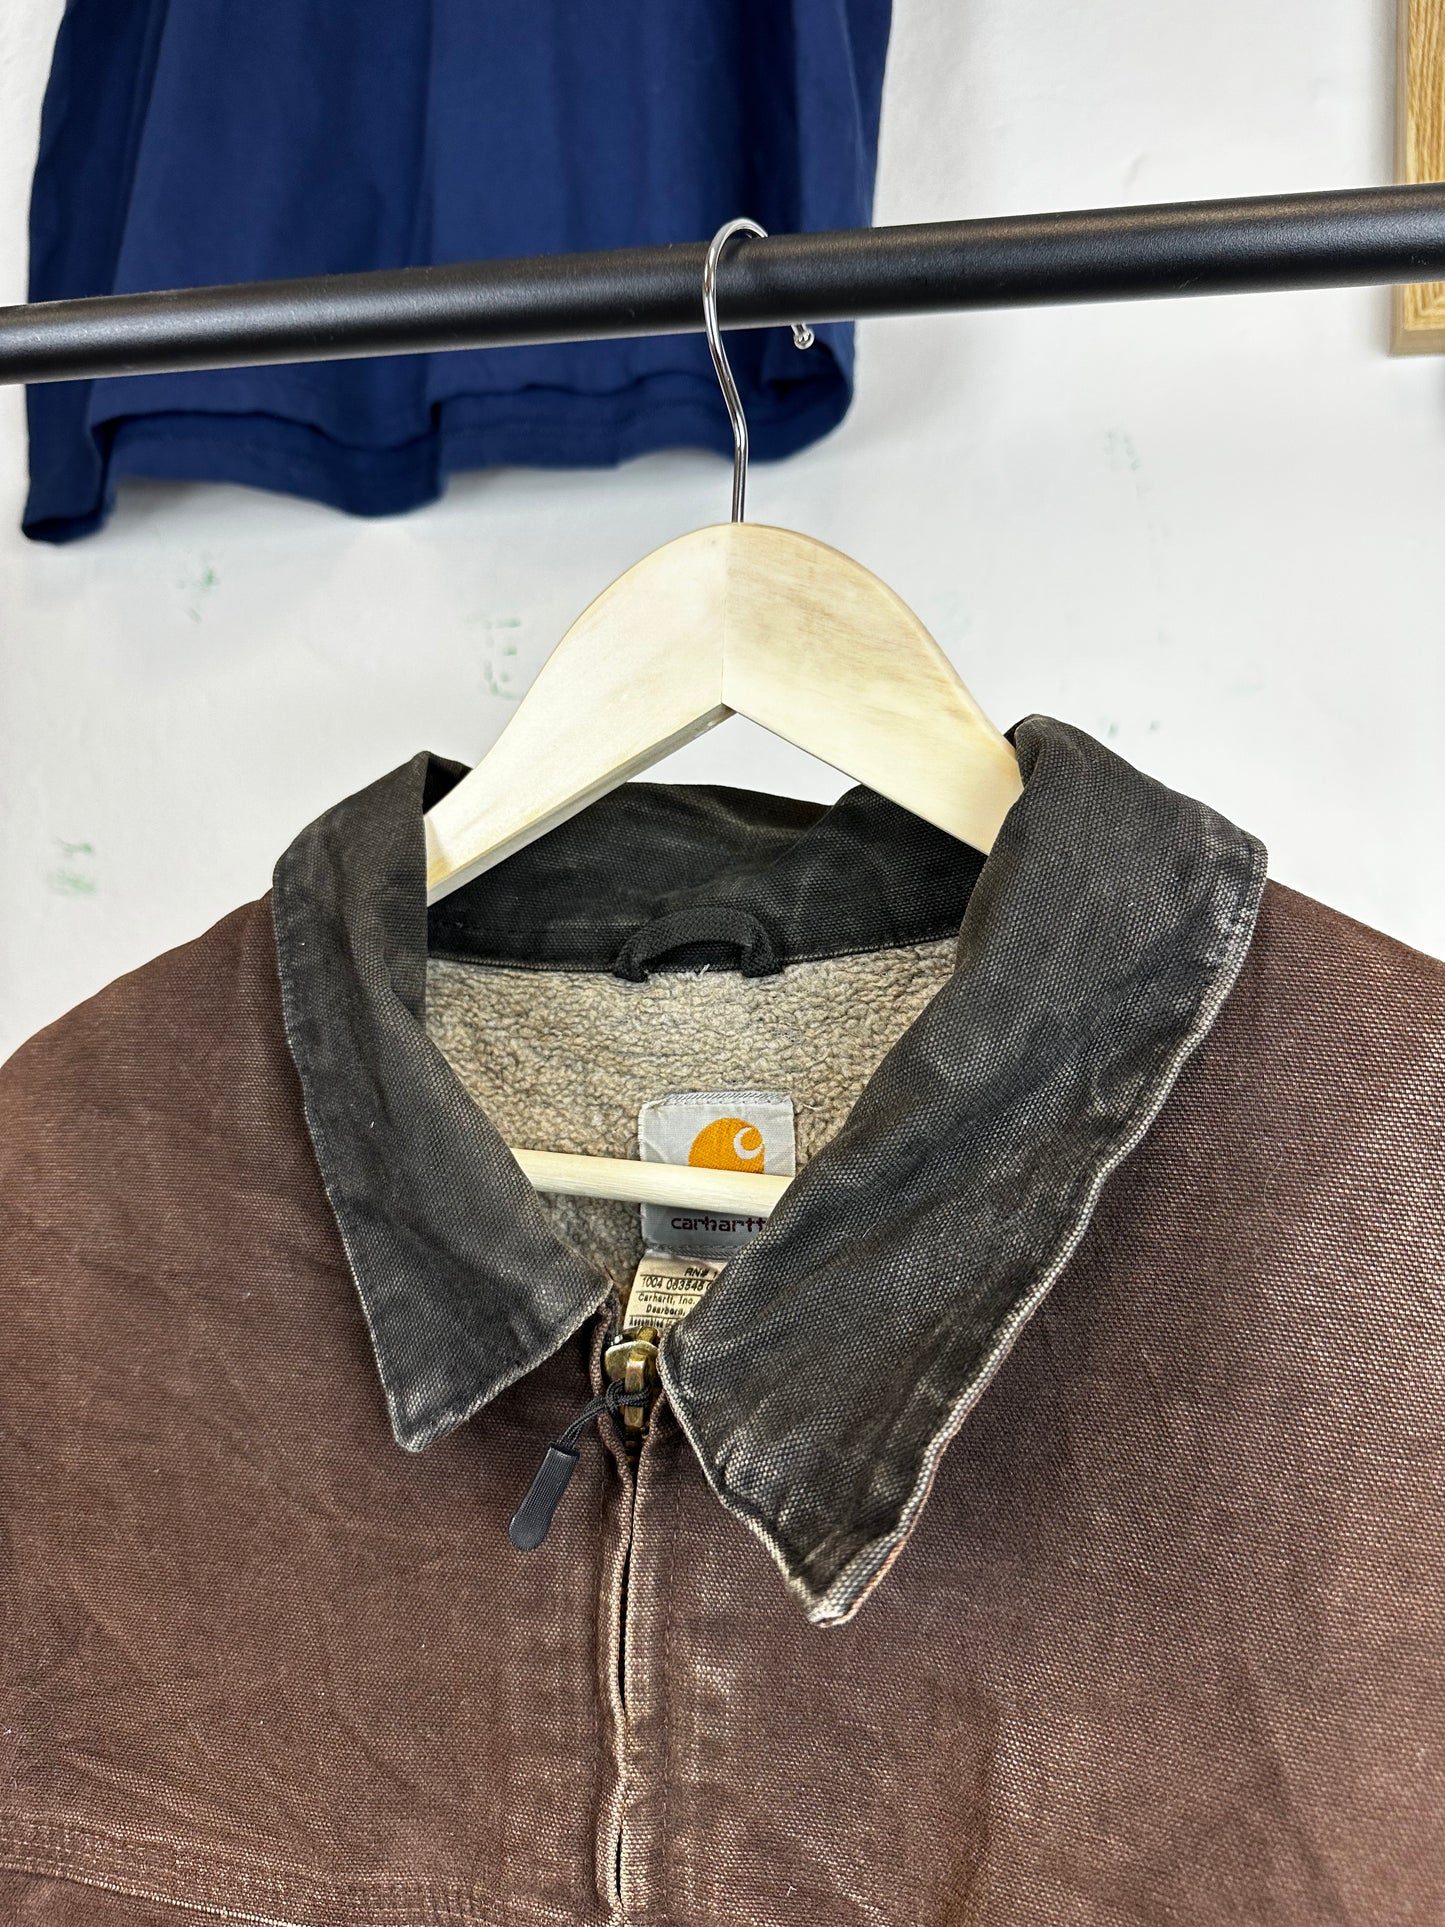 Vintage Carhartt jacket - size XXL